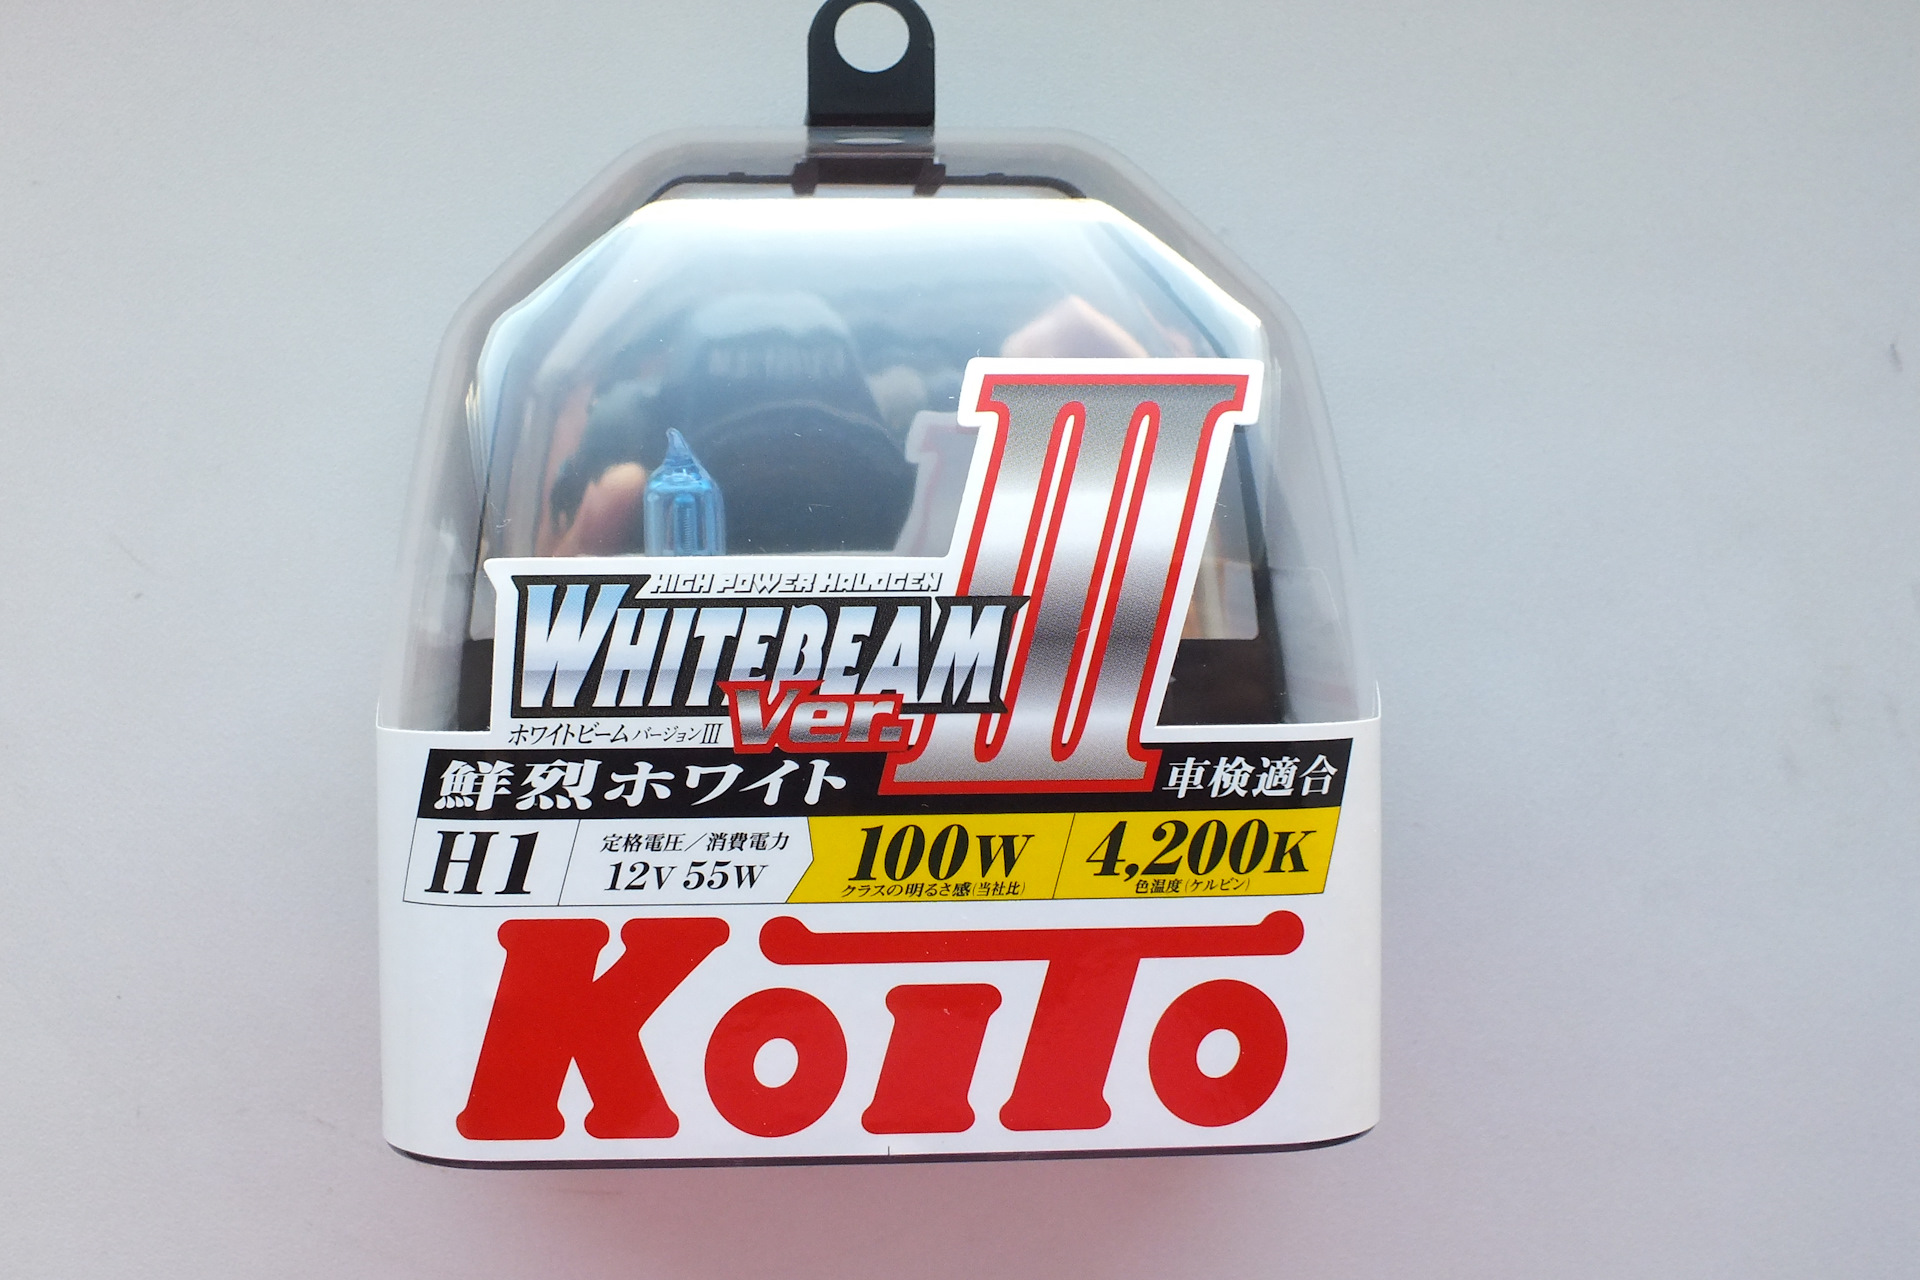 Koito Whitebeam III h7. P8813z Koito. Лампы Koito Whitebeam III. Лампы който h7 Whitebeam 4200k. Koito whitebeam 12v 55w